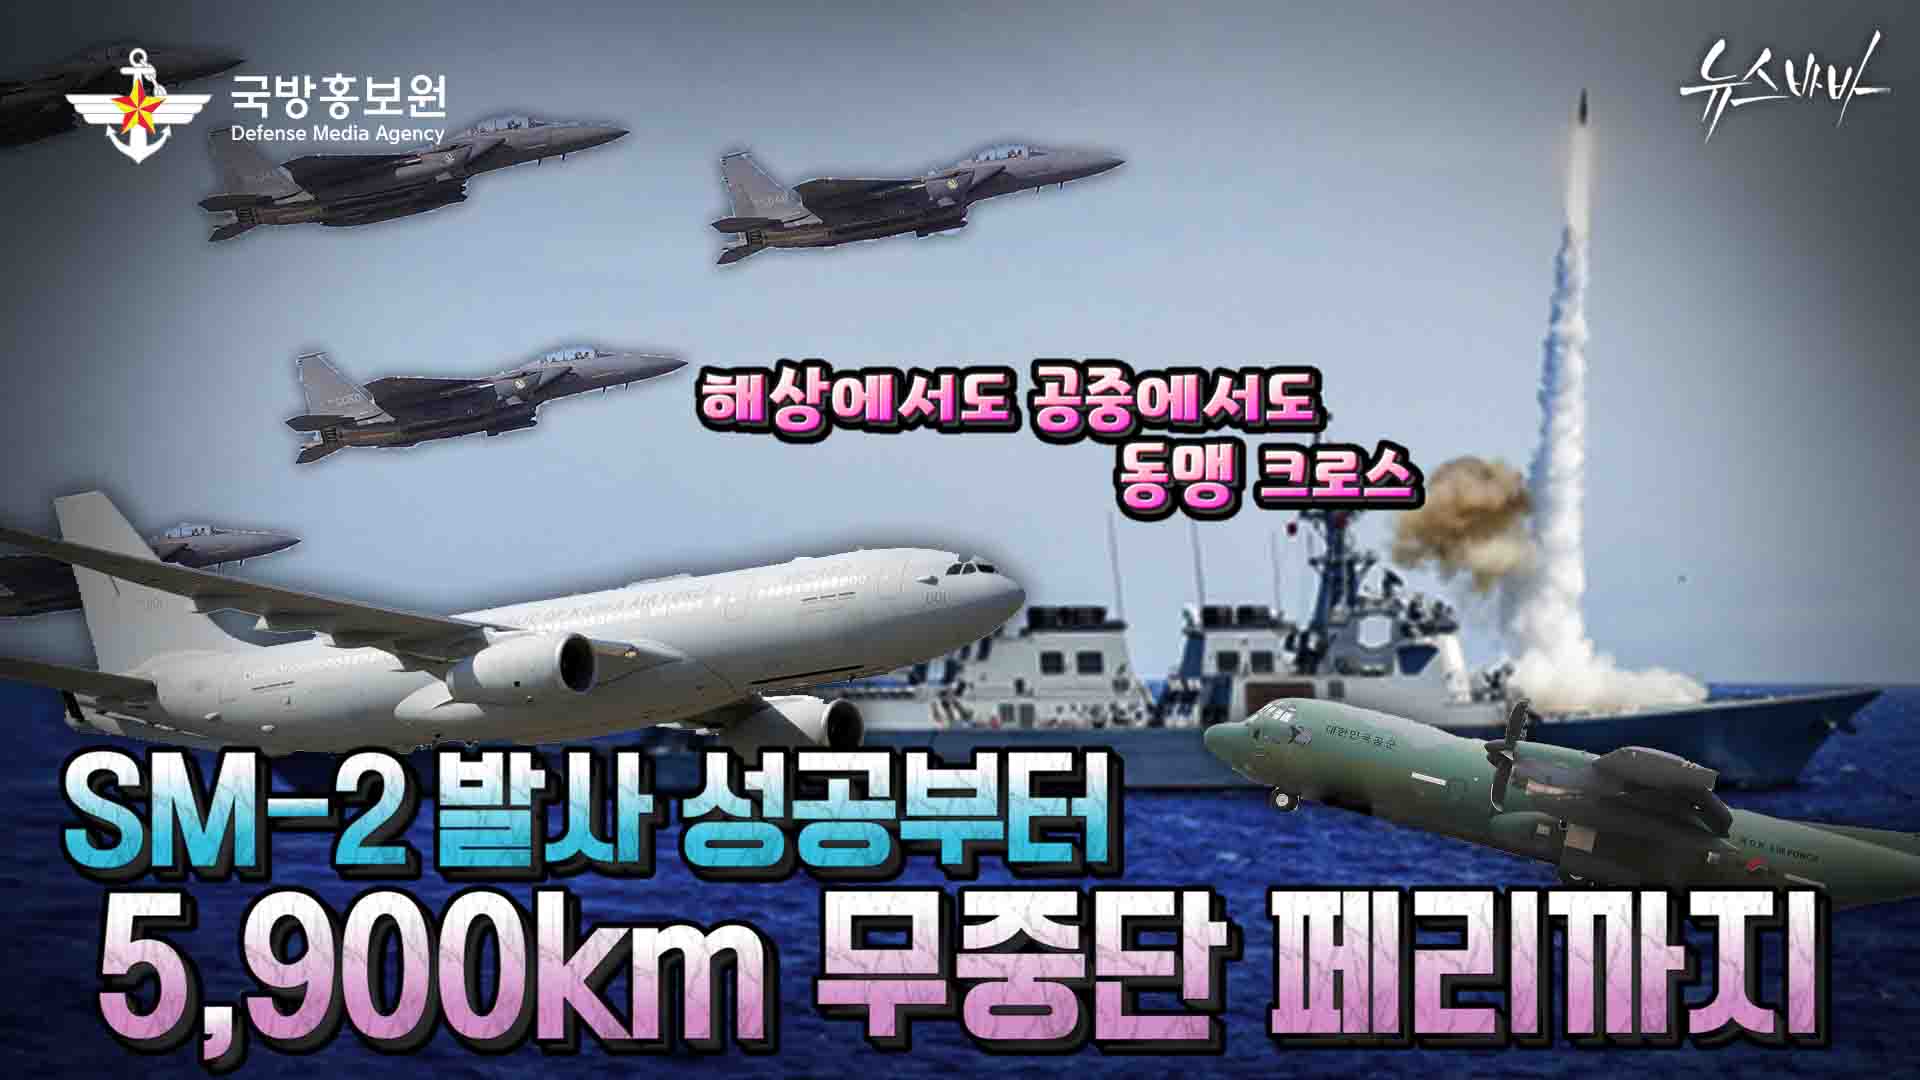 해상에서도 공중에서도 동맹 크로스! SM-2발사 성공부터 5,900km 무중단 페리까지!